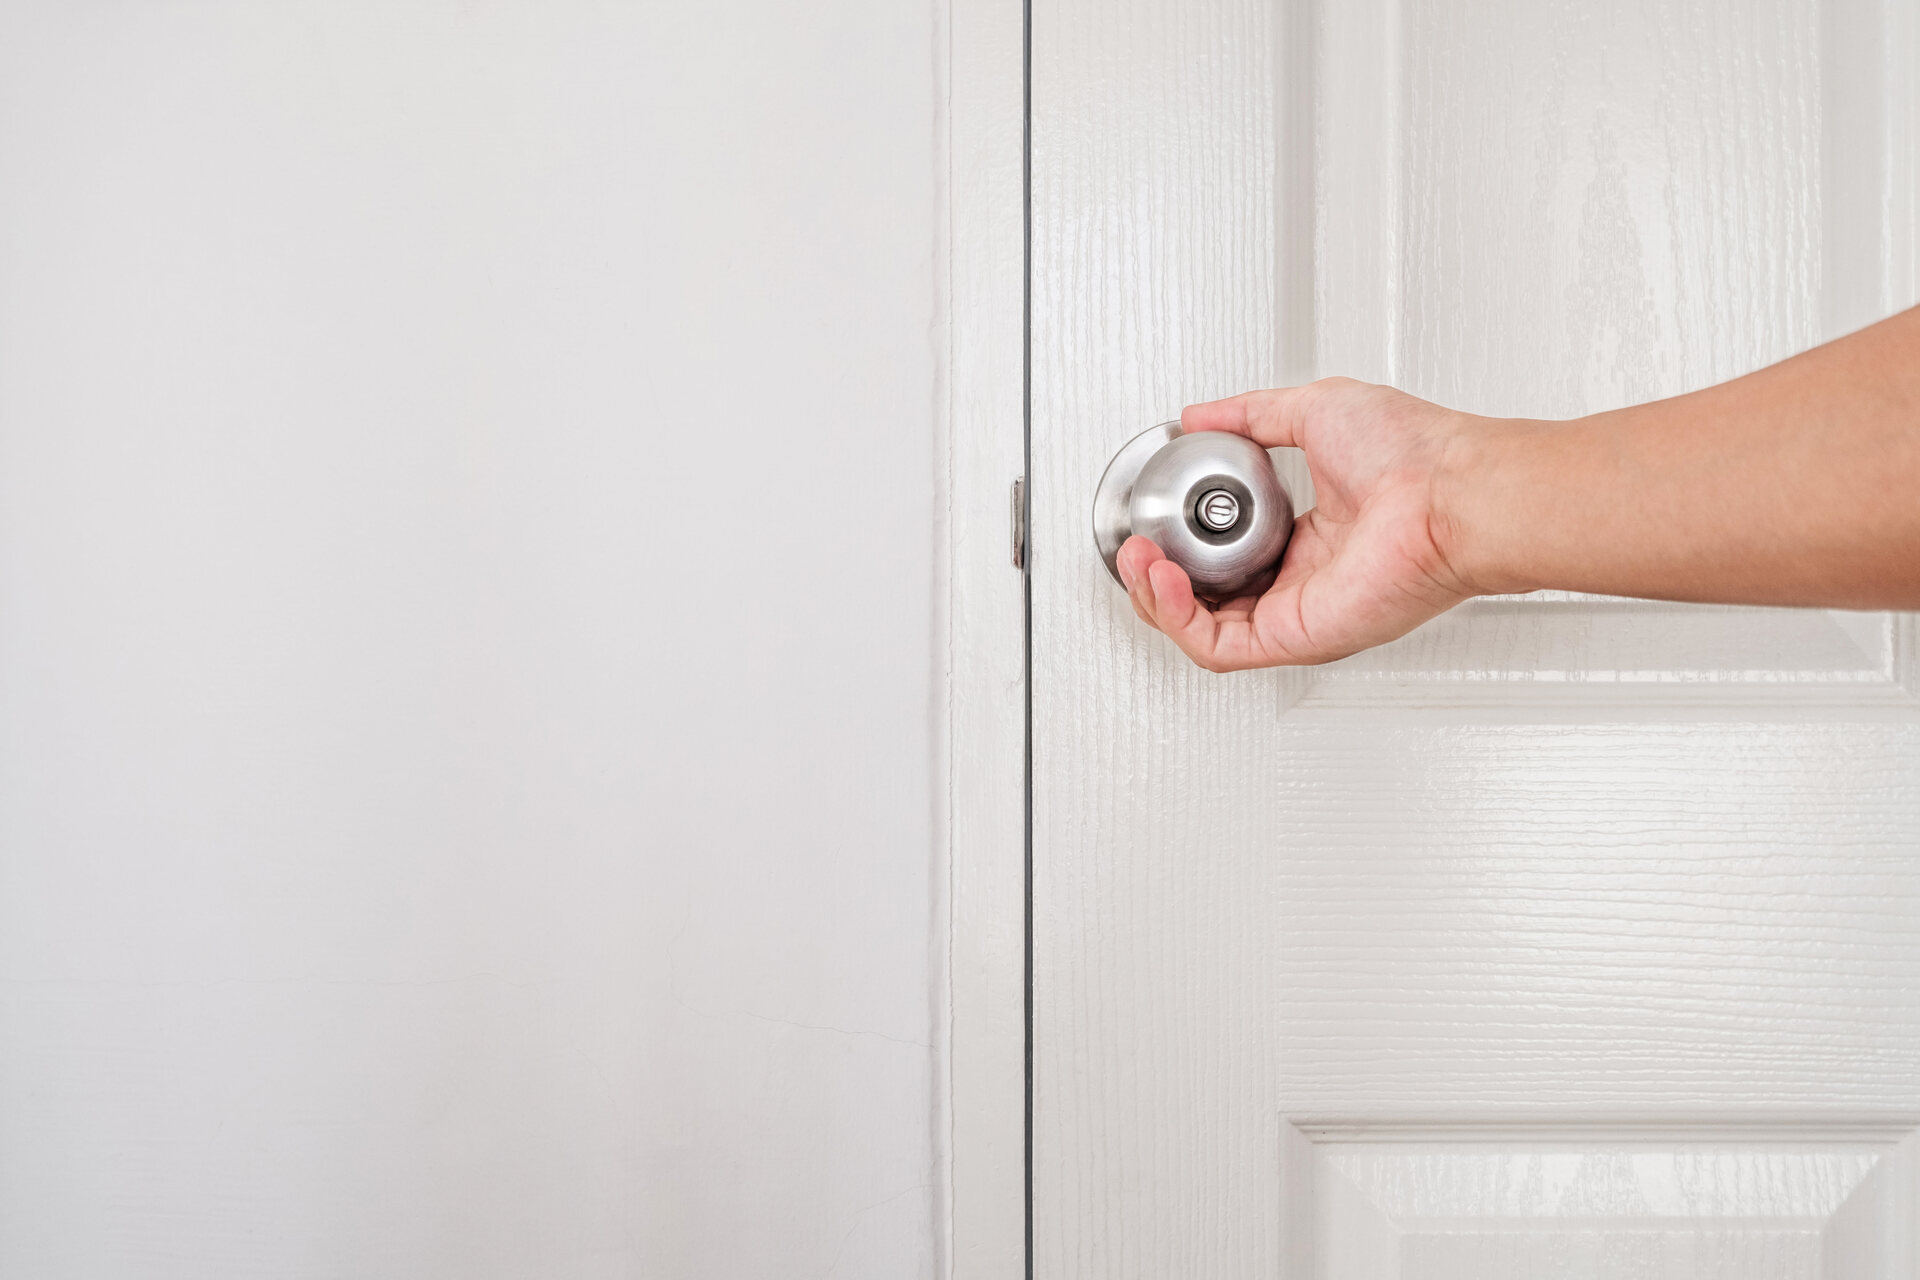 How To Unlock A Push Lock Door